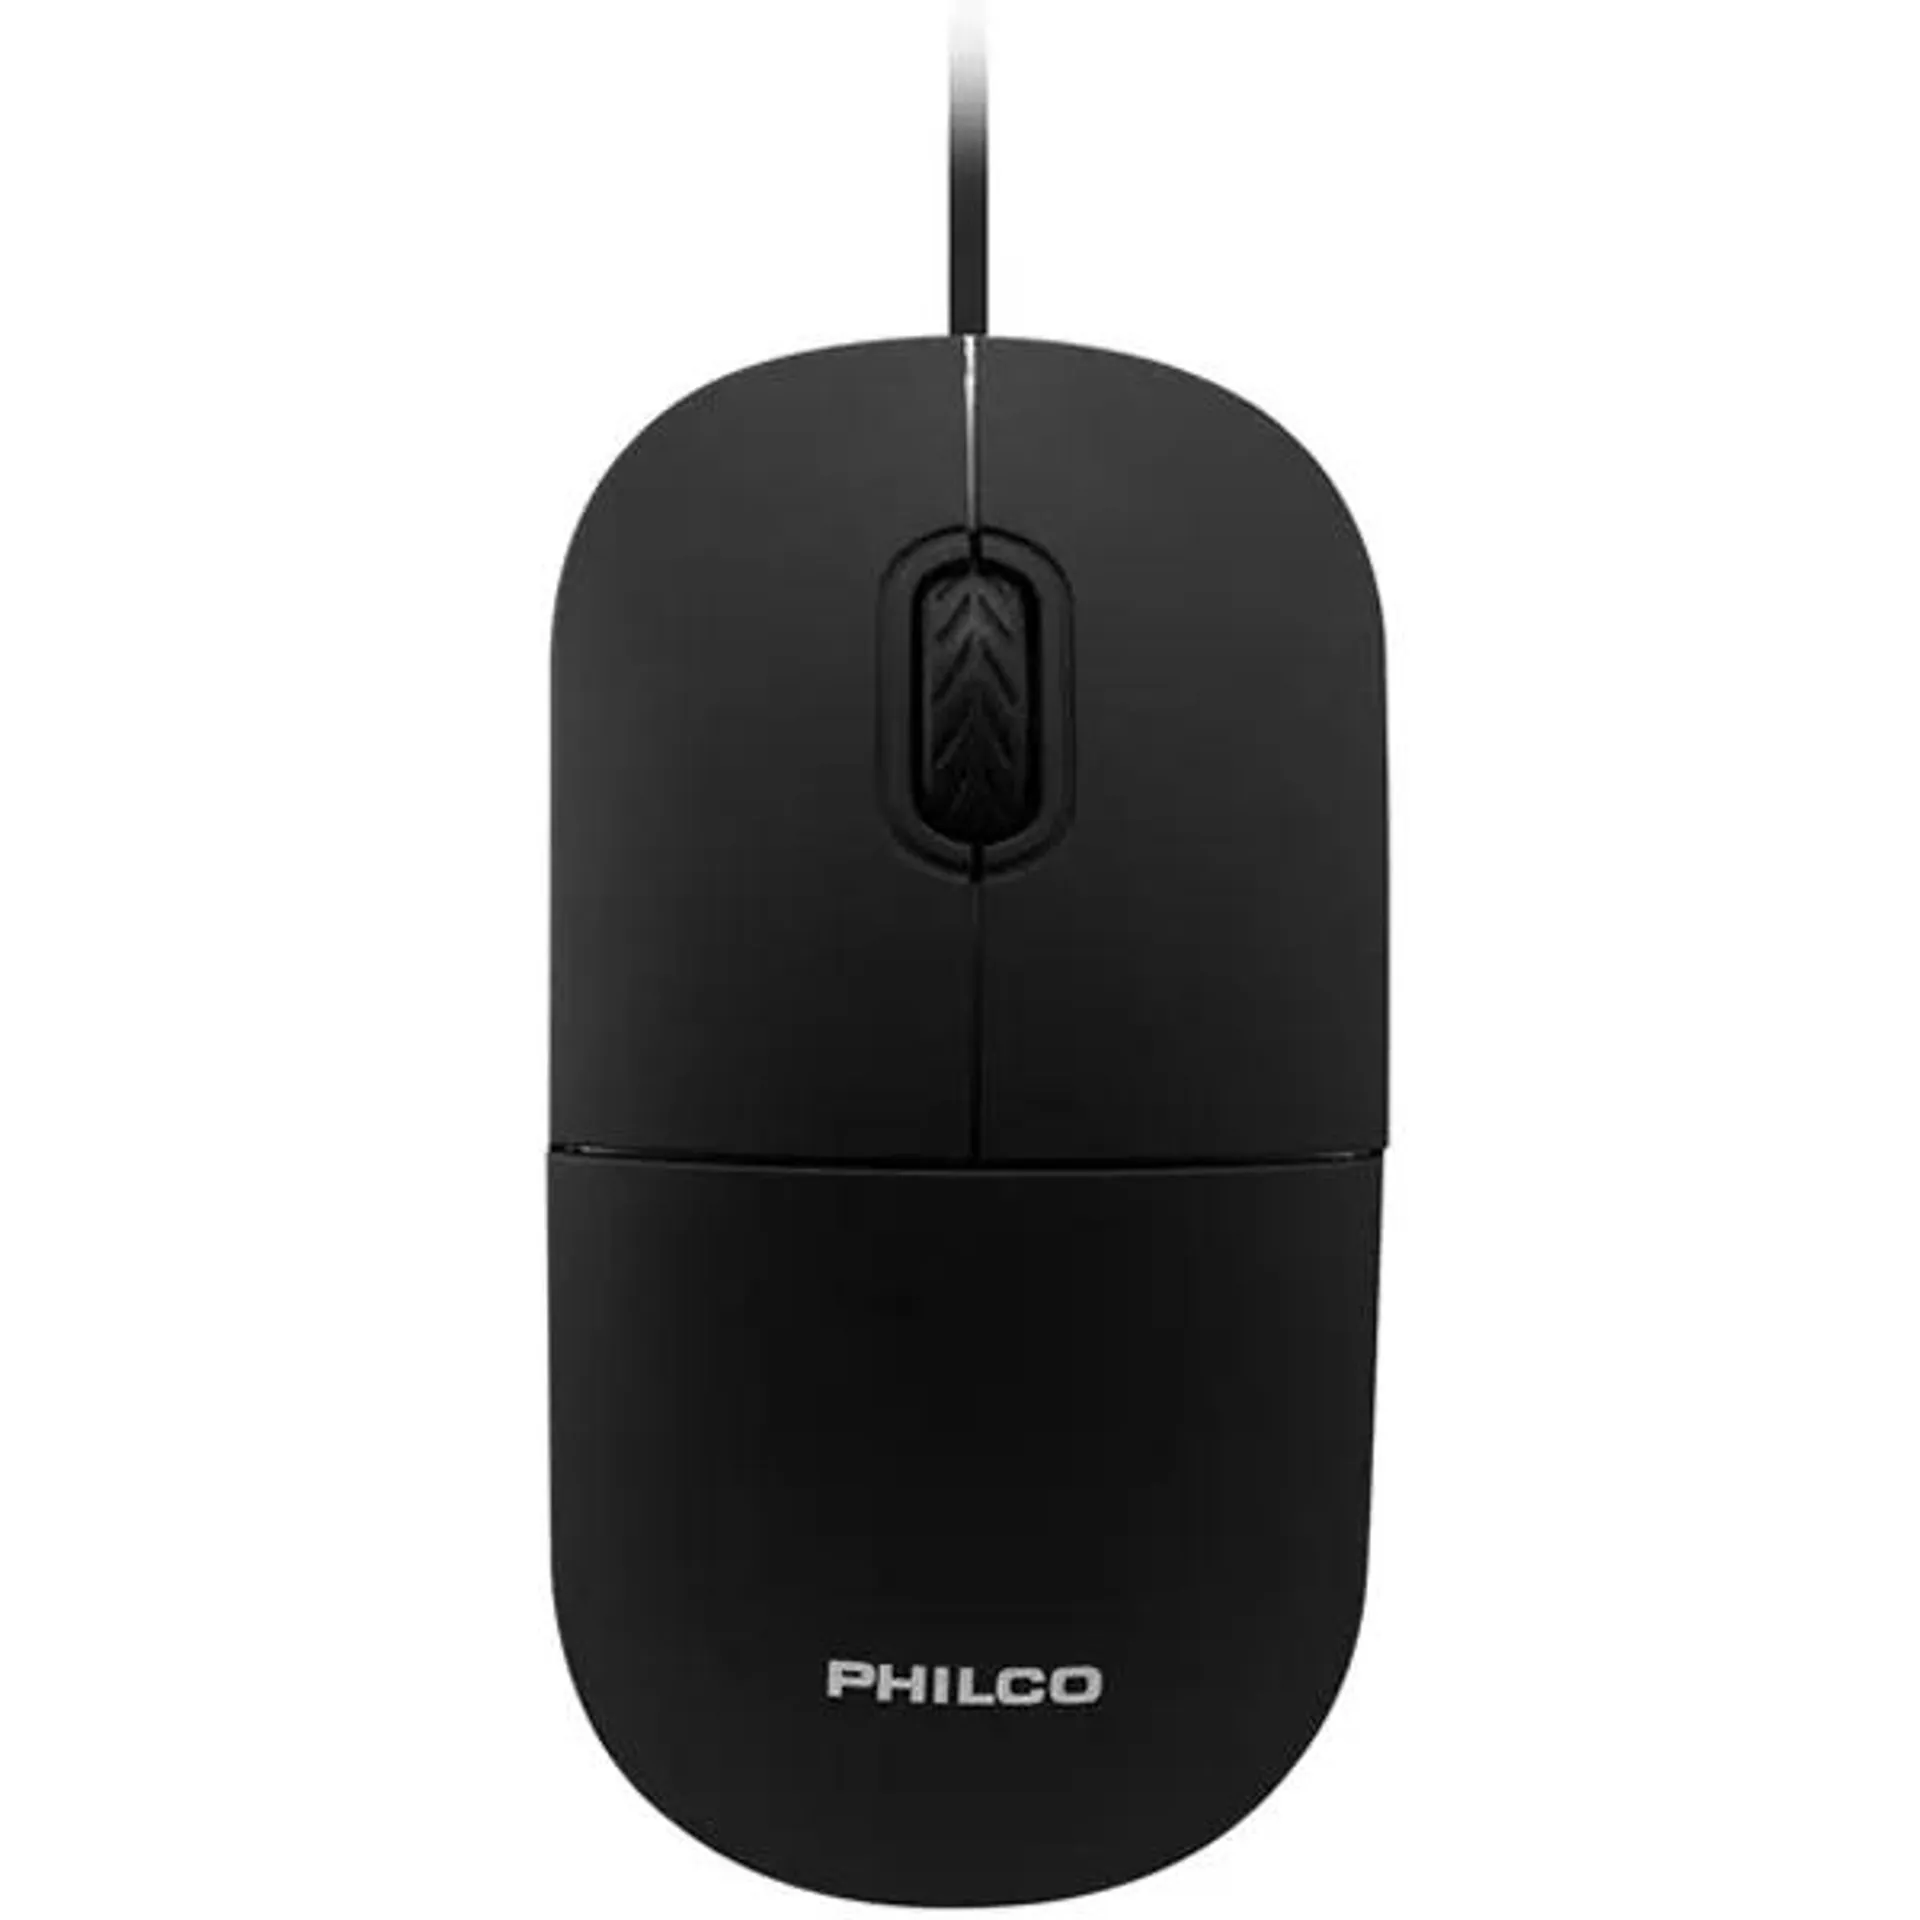 Mouse Optico Philco Alambrico USB Negro - 29PLC122UN